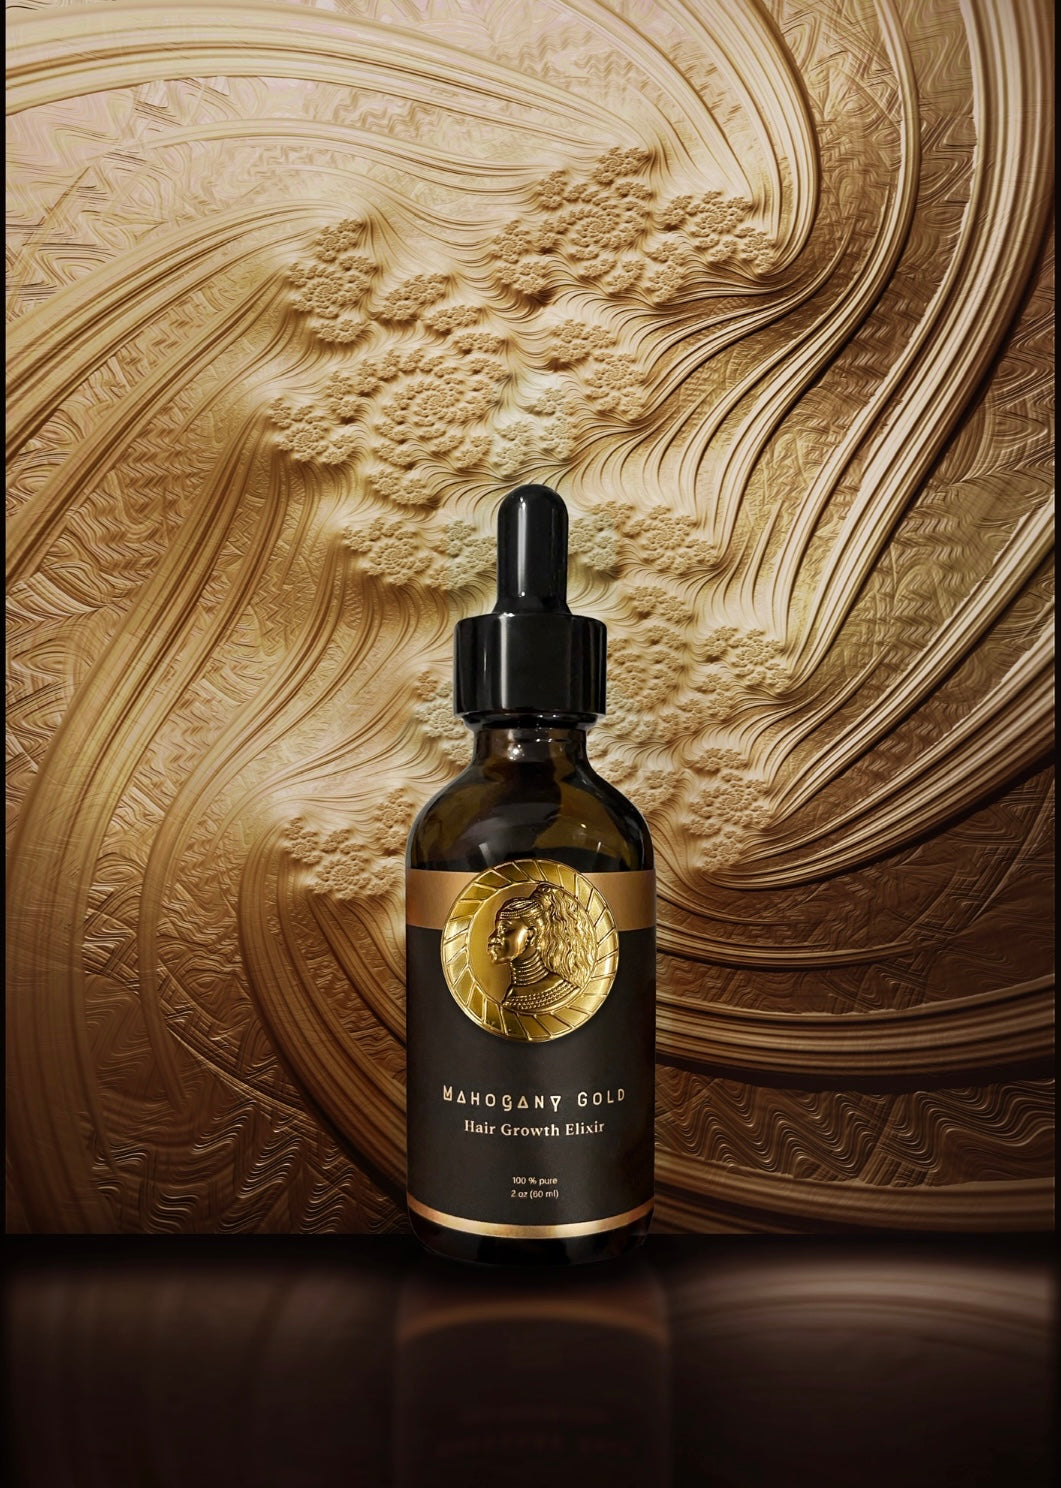 The Mahogany Gold Hair Growth Elixir